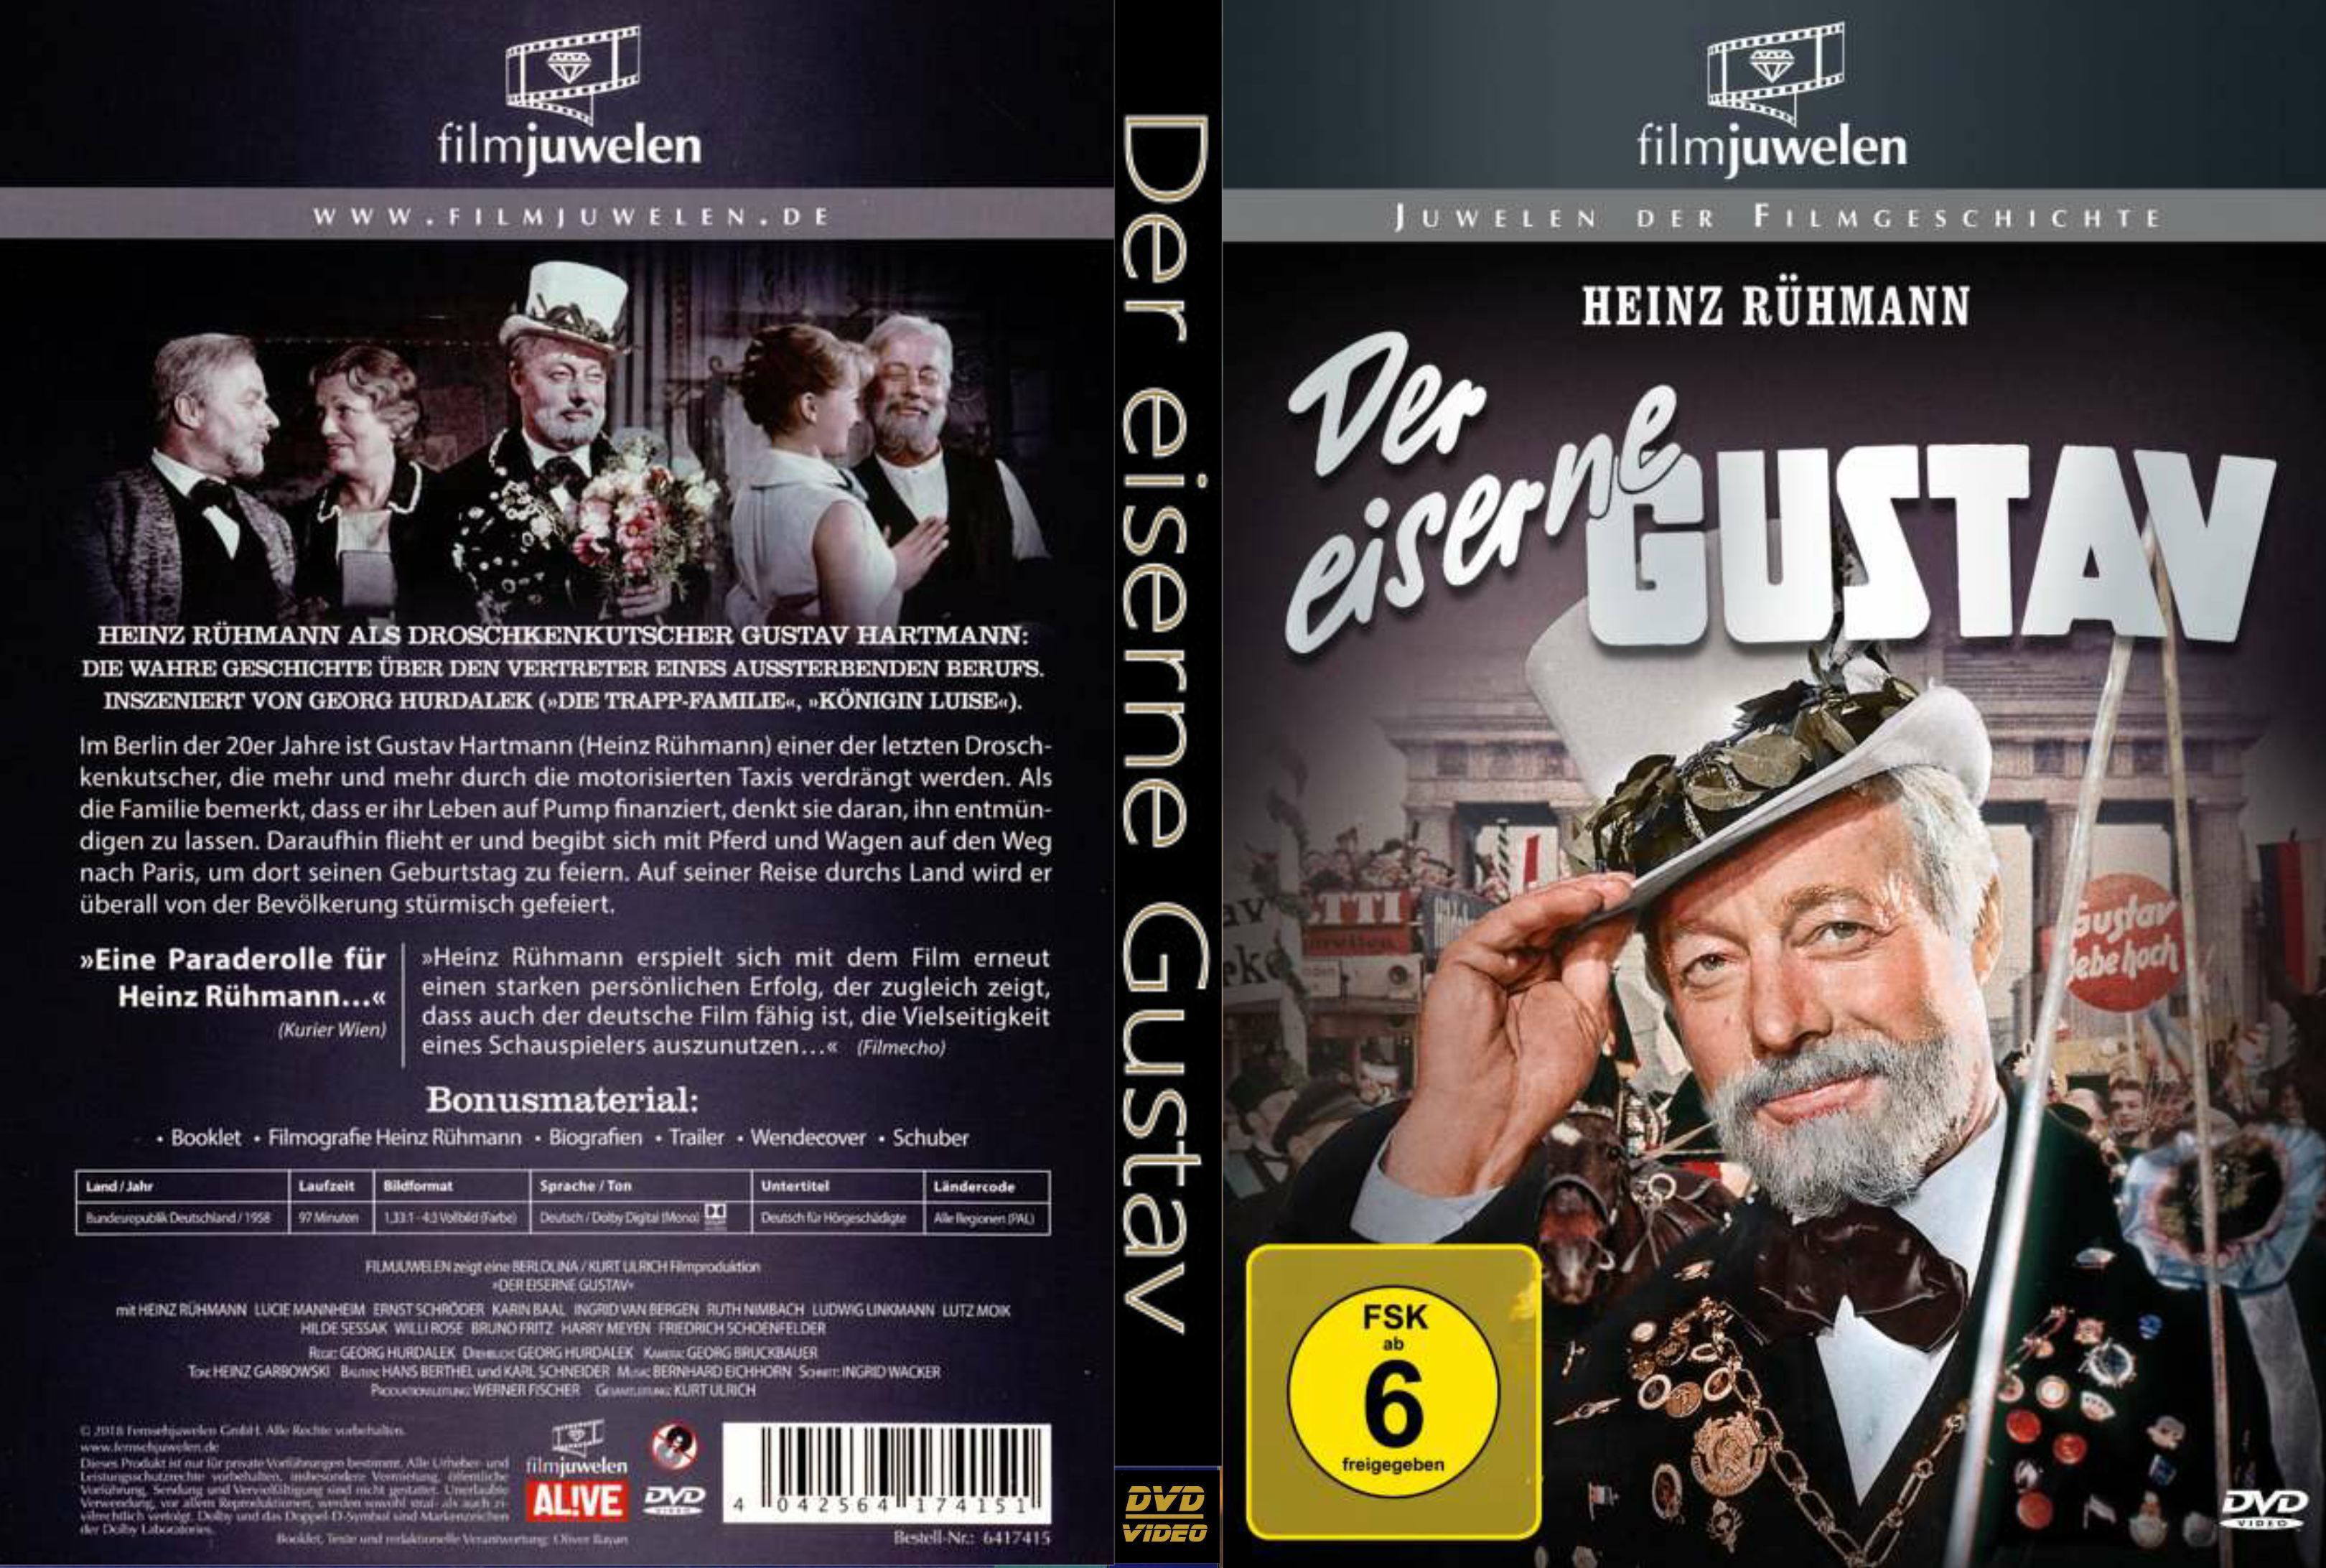 Der eiserne Gustav (1958) Heinz Ruhmann